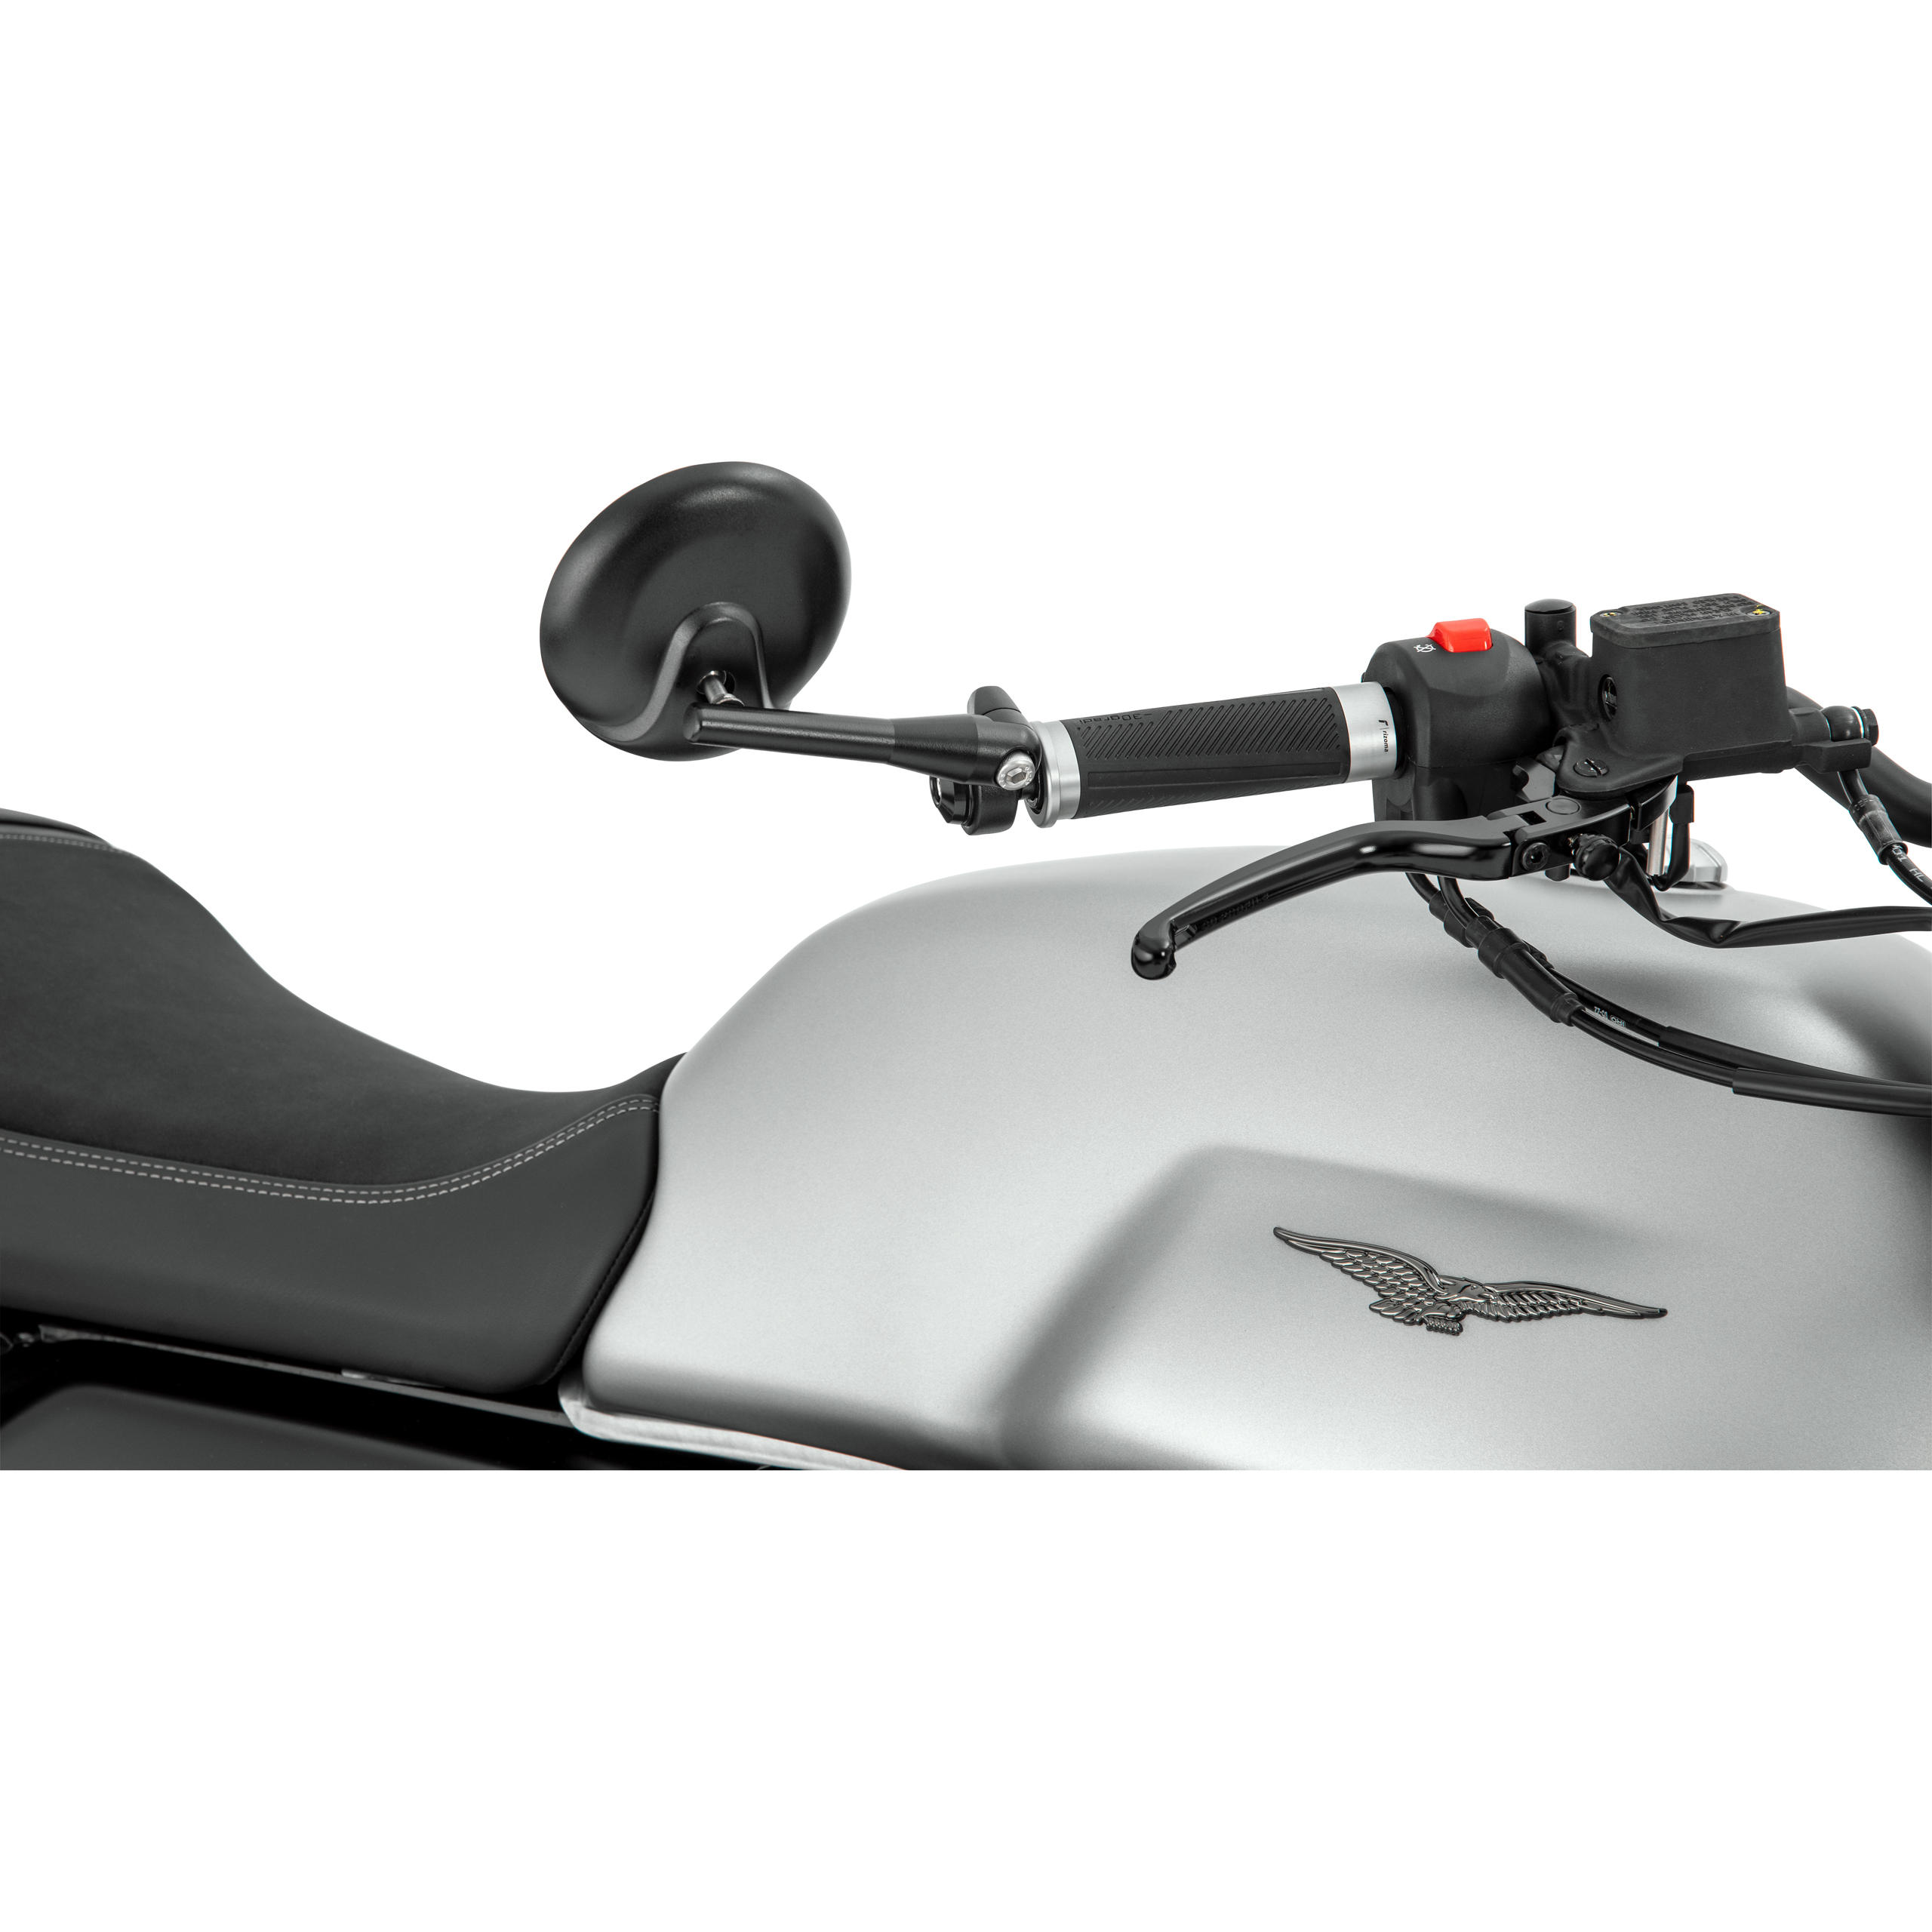 Motorradspiegel SC60, M10-R, rechts, schwarz, ABS, E-geprüft - KSOH-M,  20,17 €